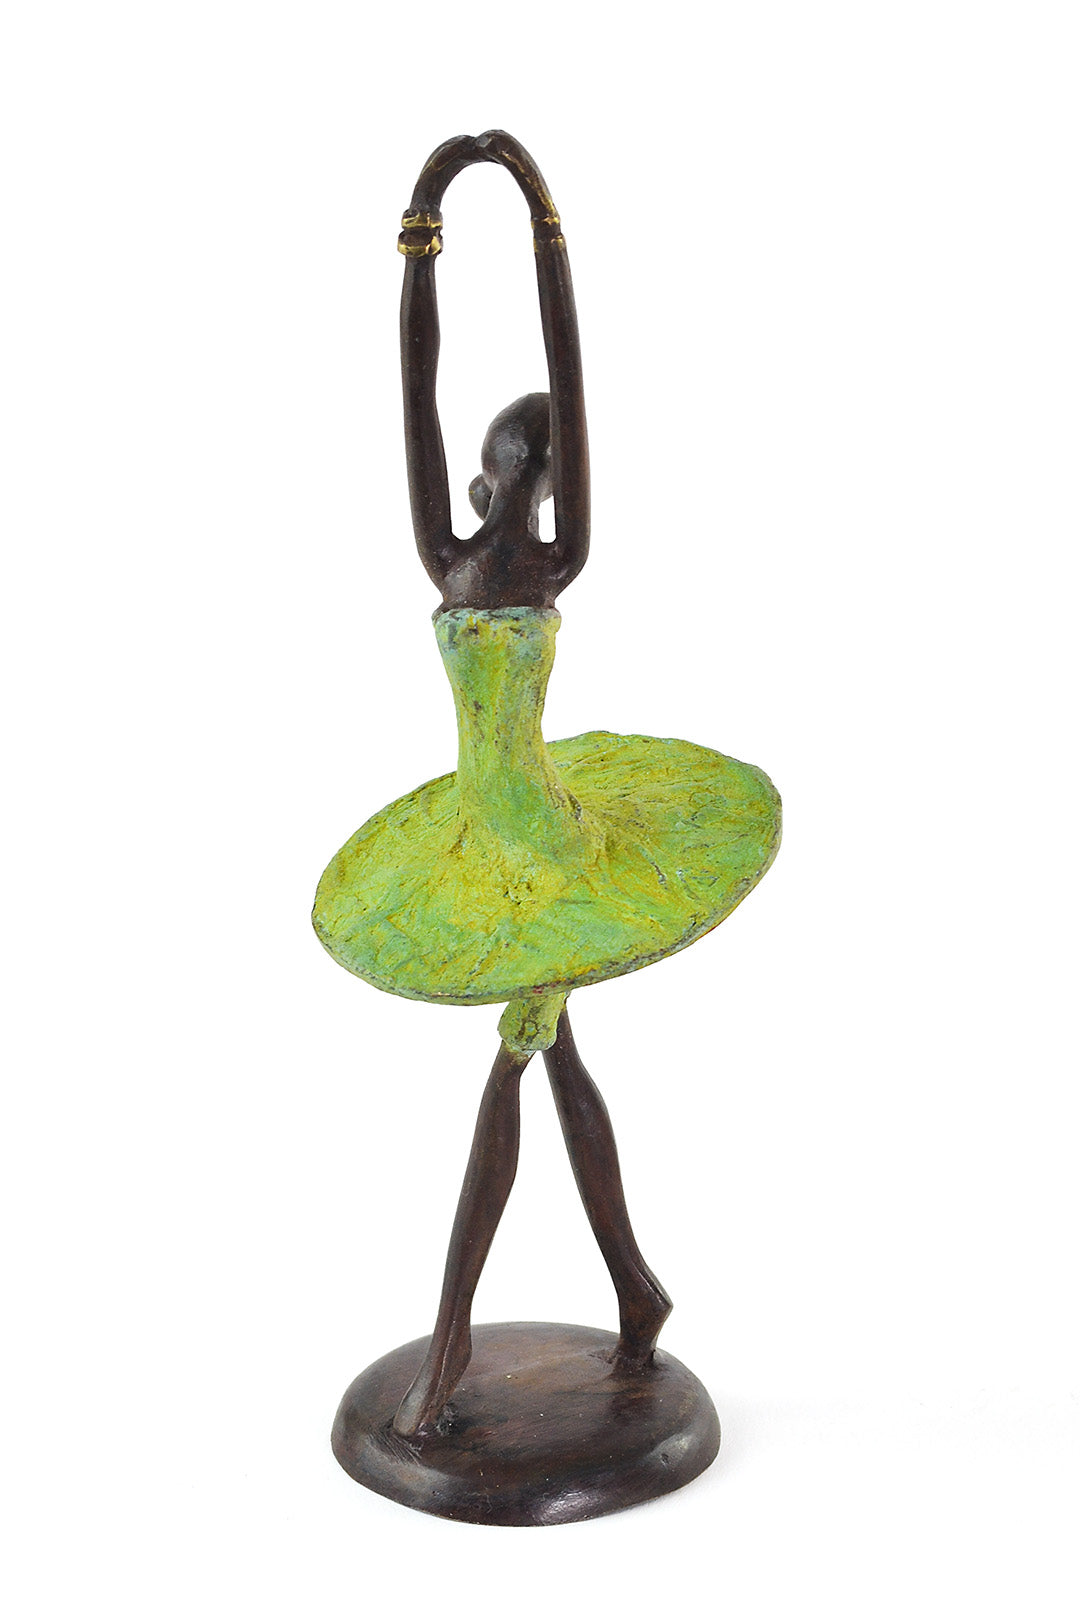 Ballerina in Relevé Lost Wax Bronze Sculpture